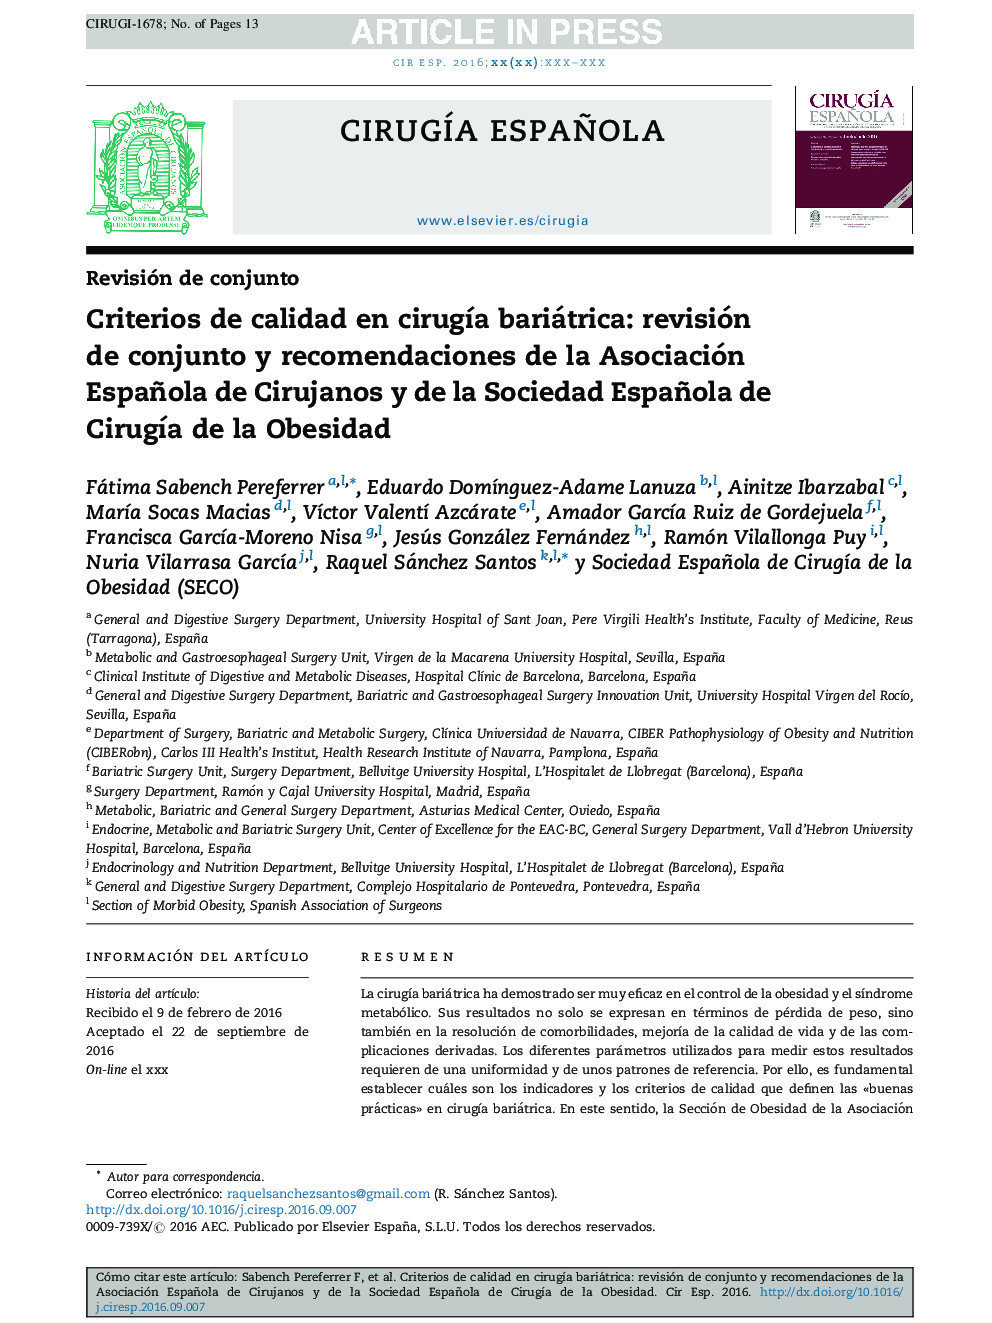 Criterios de calidad en cirugÃ­a bariátrica: revisión de conjunto y recomendaciones de la Asociación Española de Cirujanos y de la Sociedad Española de CirugÃ­a de la Obesidad